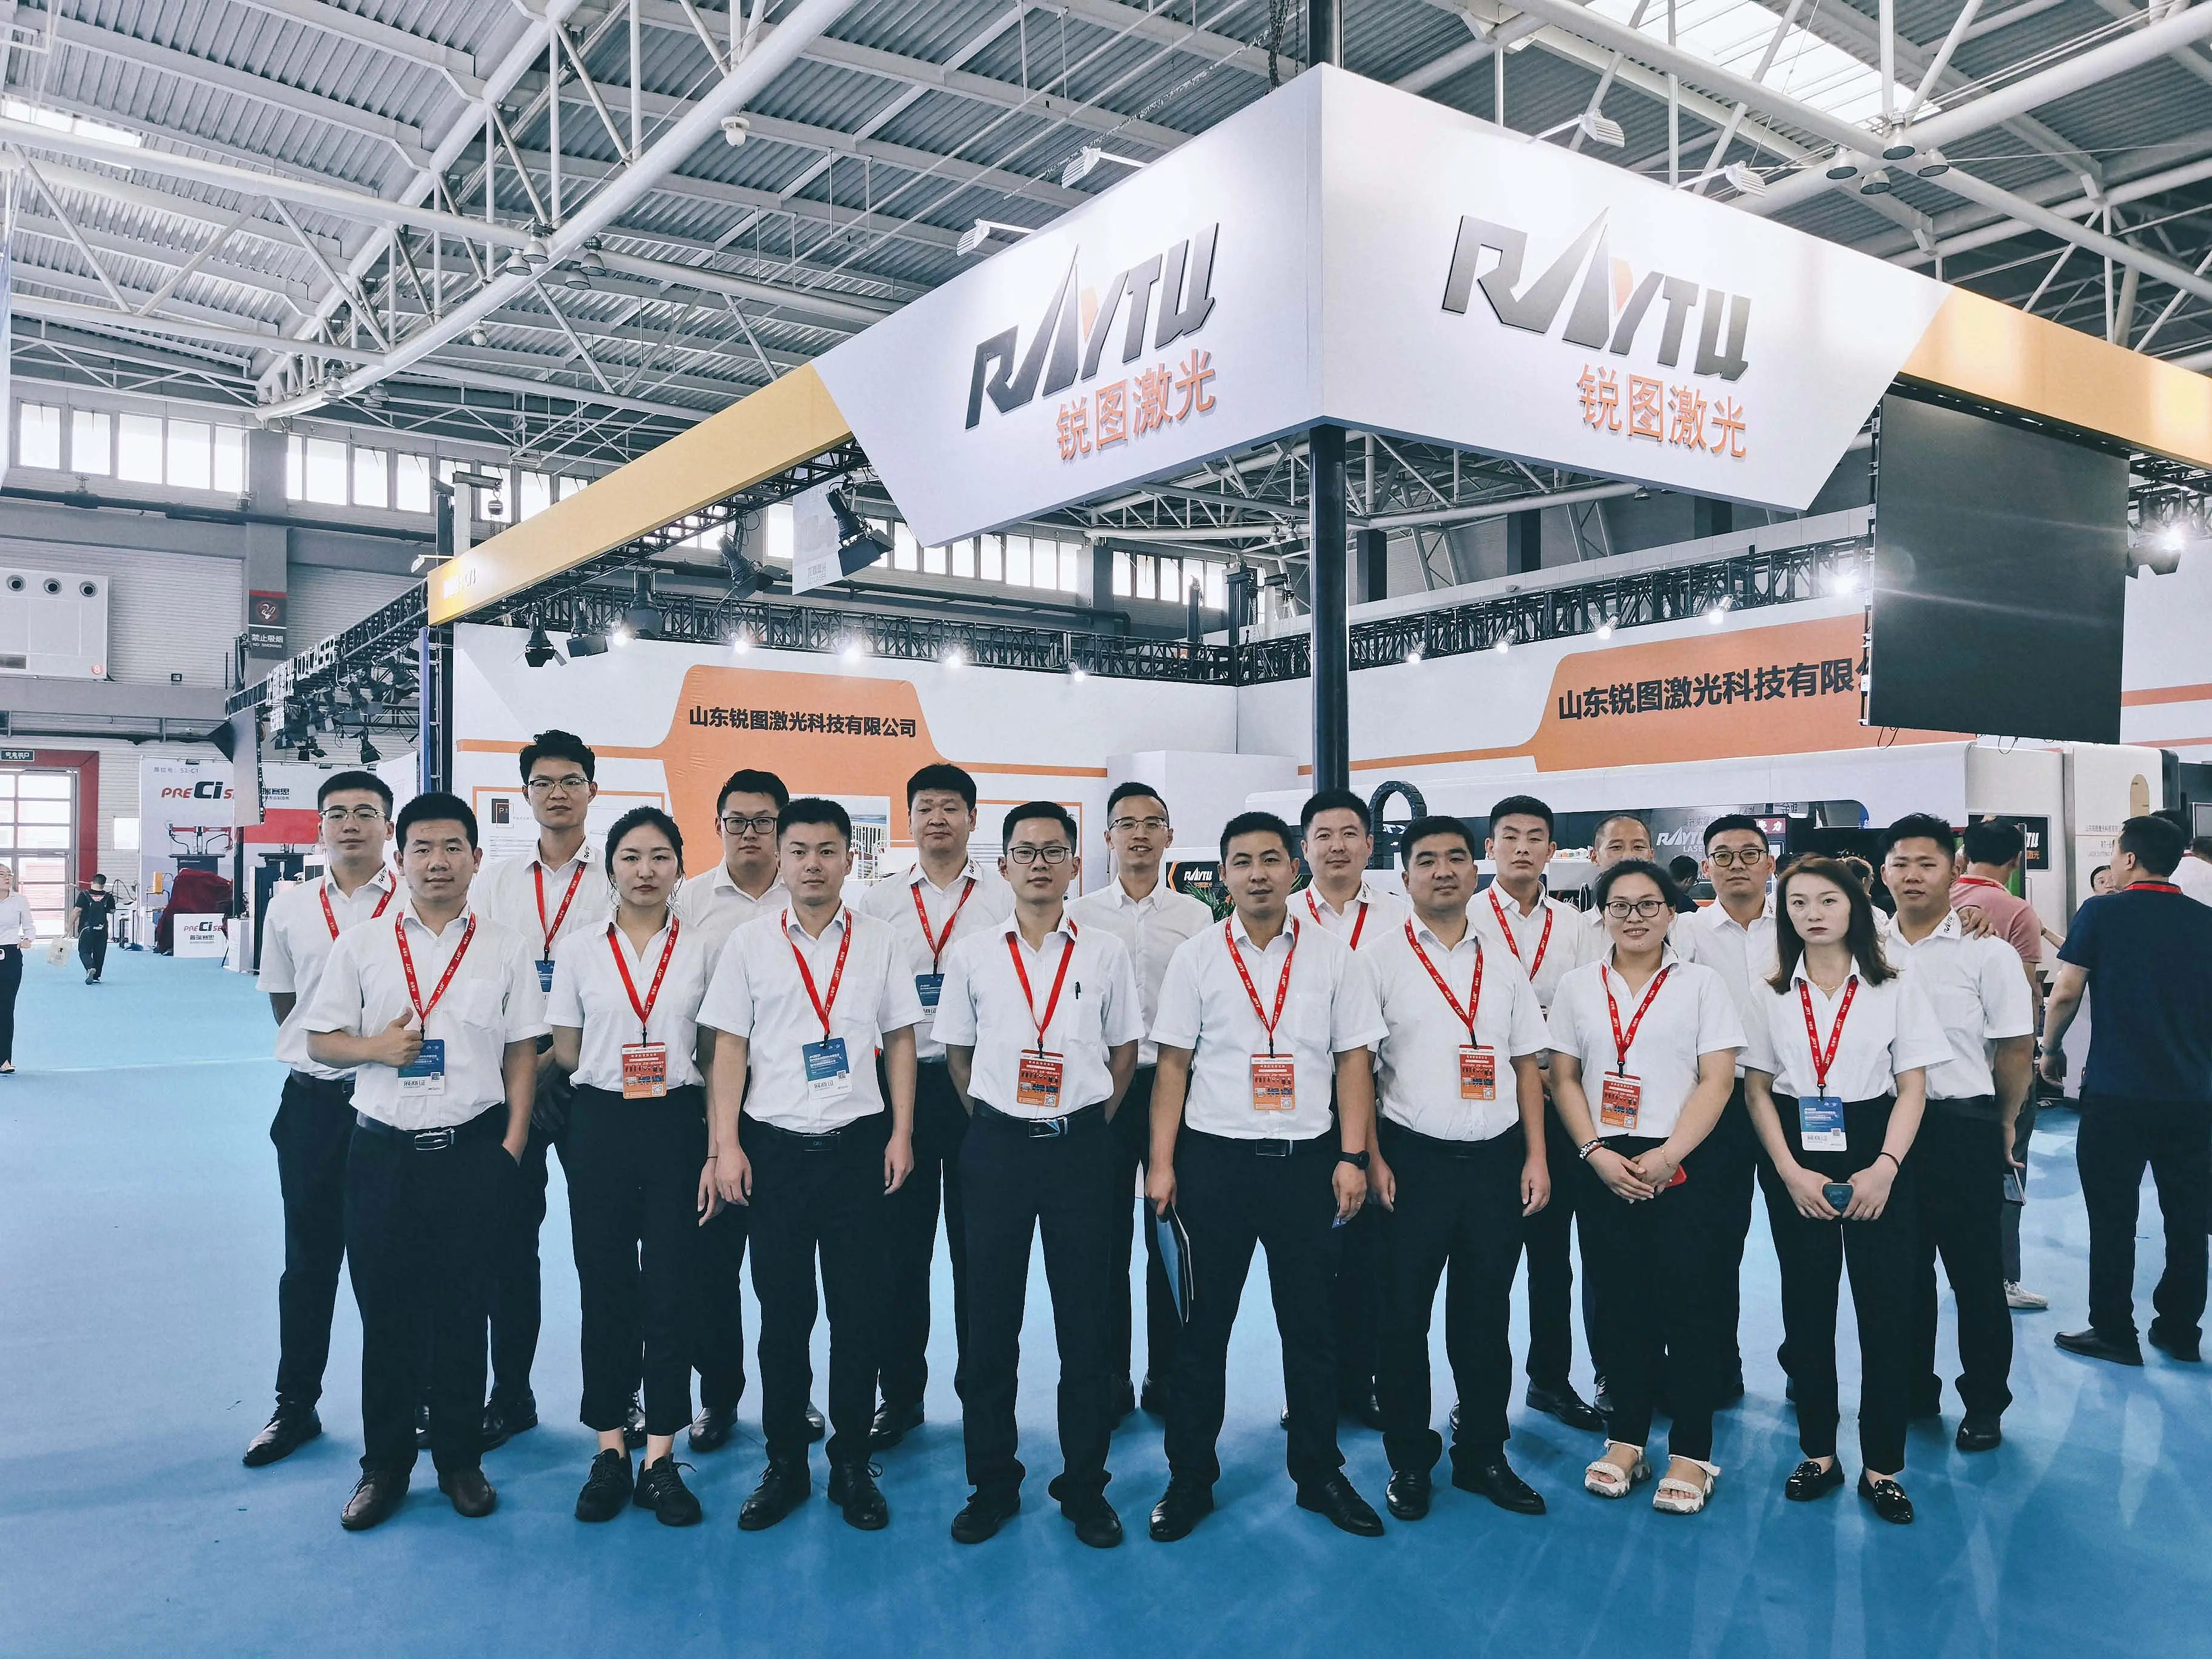 Ruitu laser fue invitado a participar en la 24ª Exposición Internacional de máquinas herramienta Qingdao (jm2021)